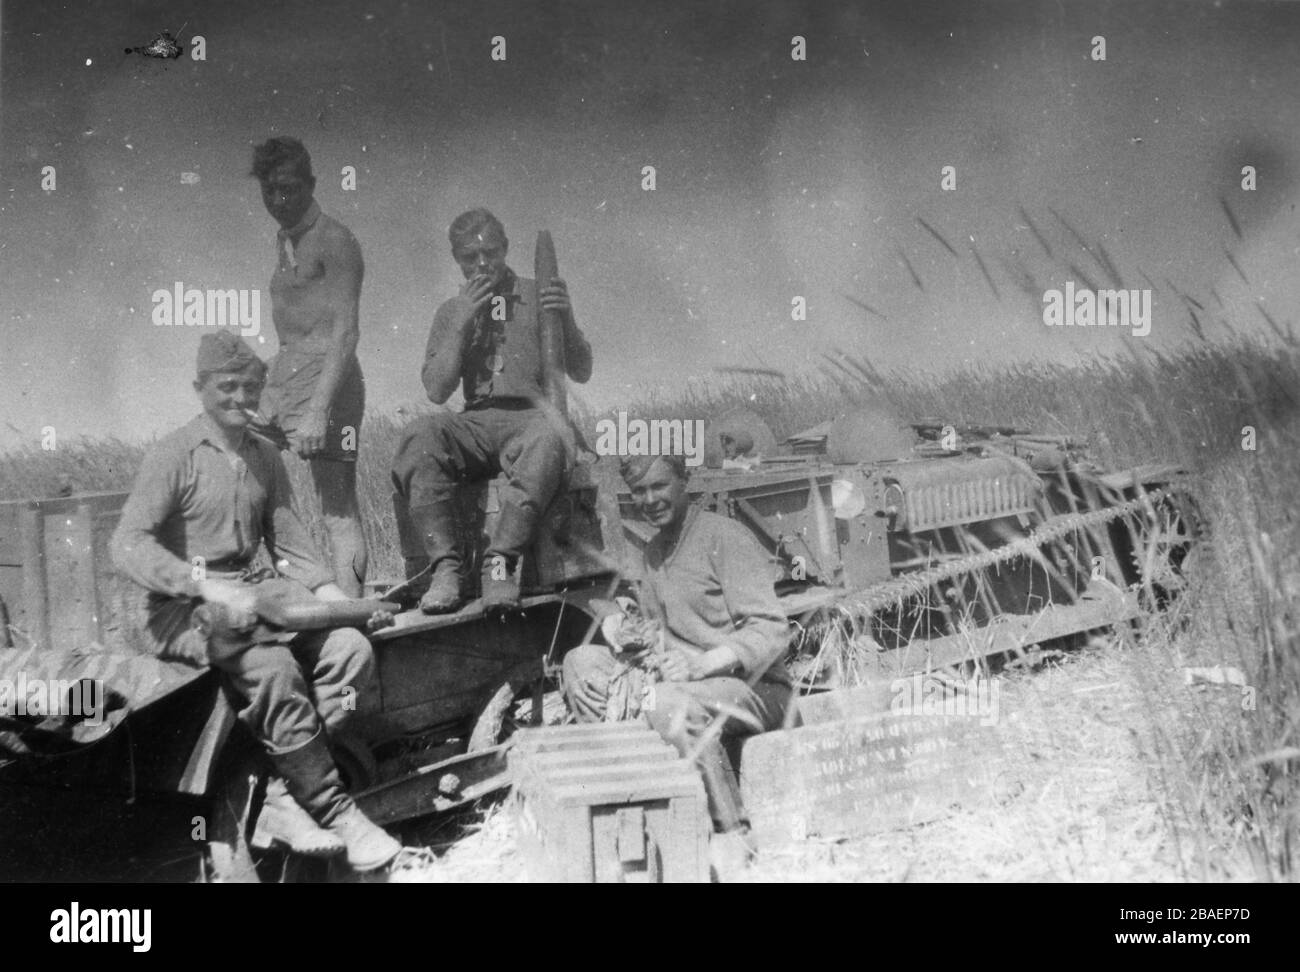 Historisches Foto des zweiten Weltkriegs/zweiten Weltkriegs über die deutsche Invasion - Waffen-SS-Trojer in der UdSSR (Weißrussland) - 1942 (Region Minsk). Tank Stockfoto